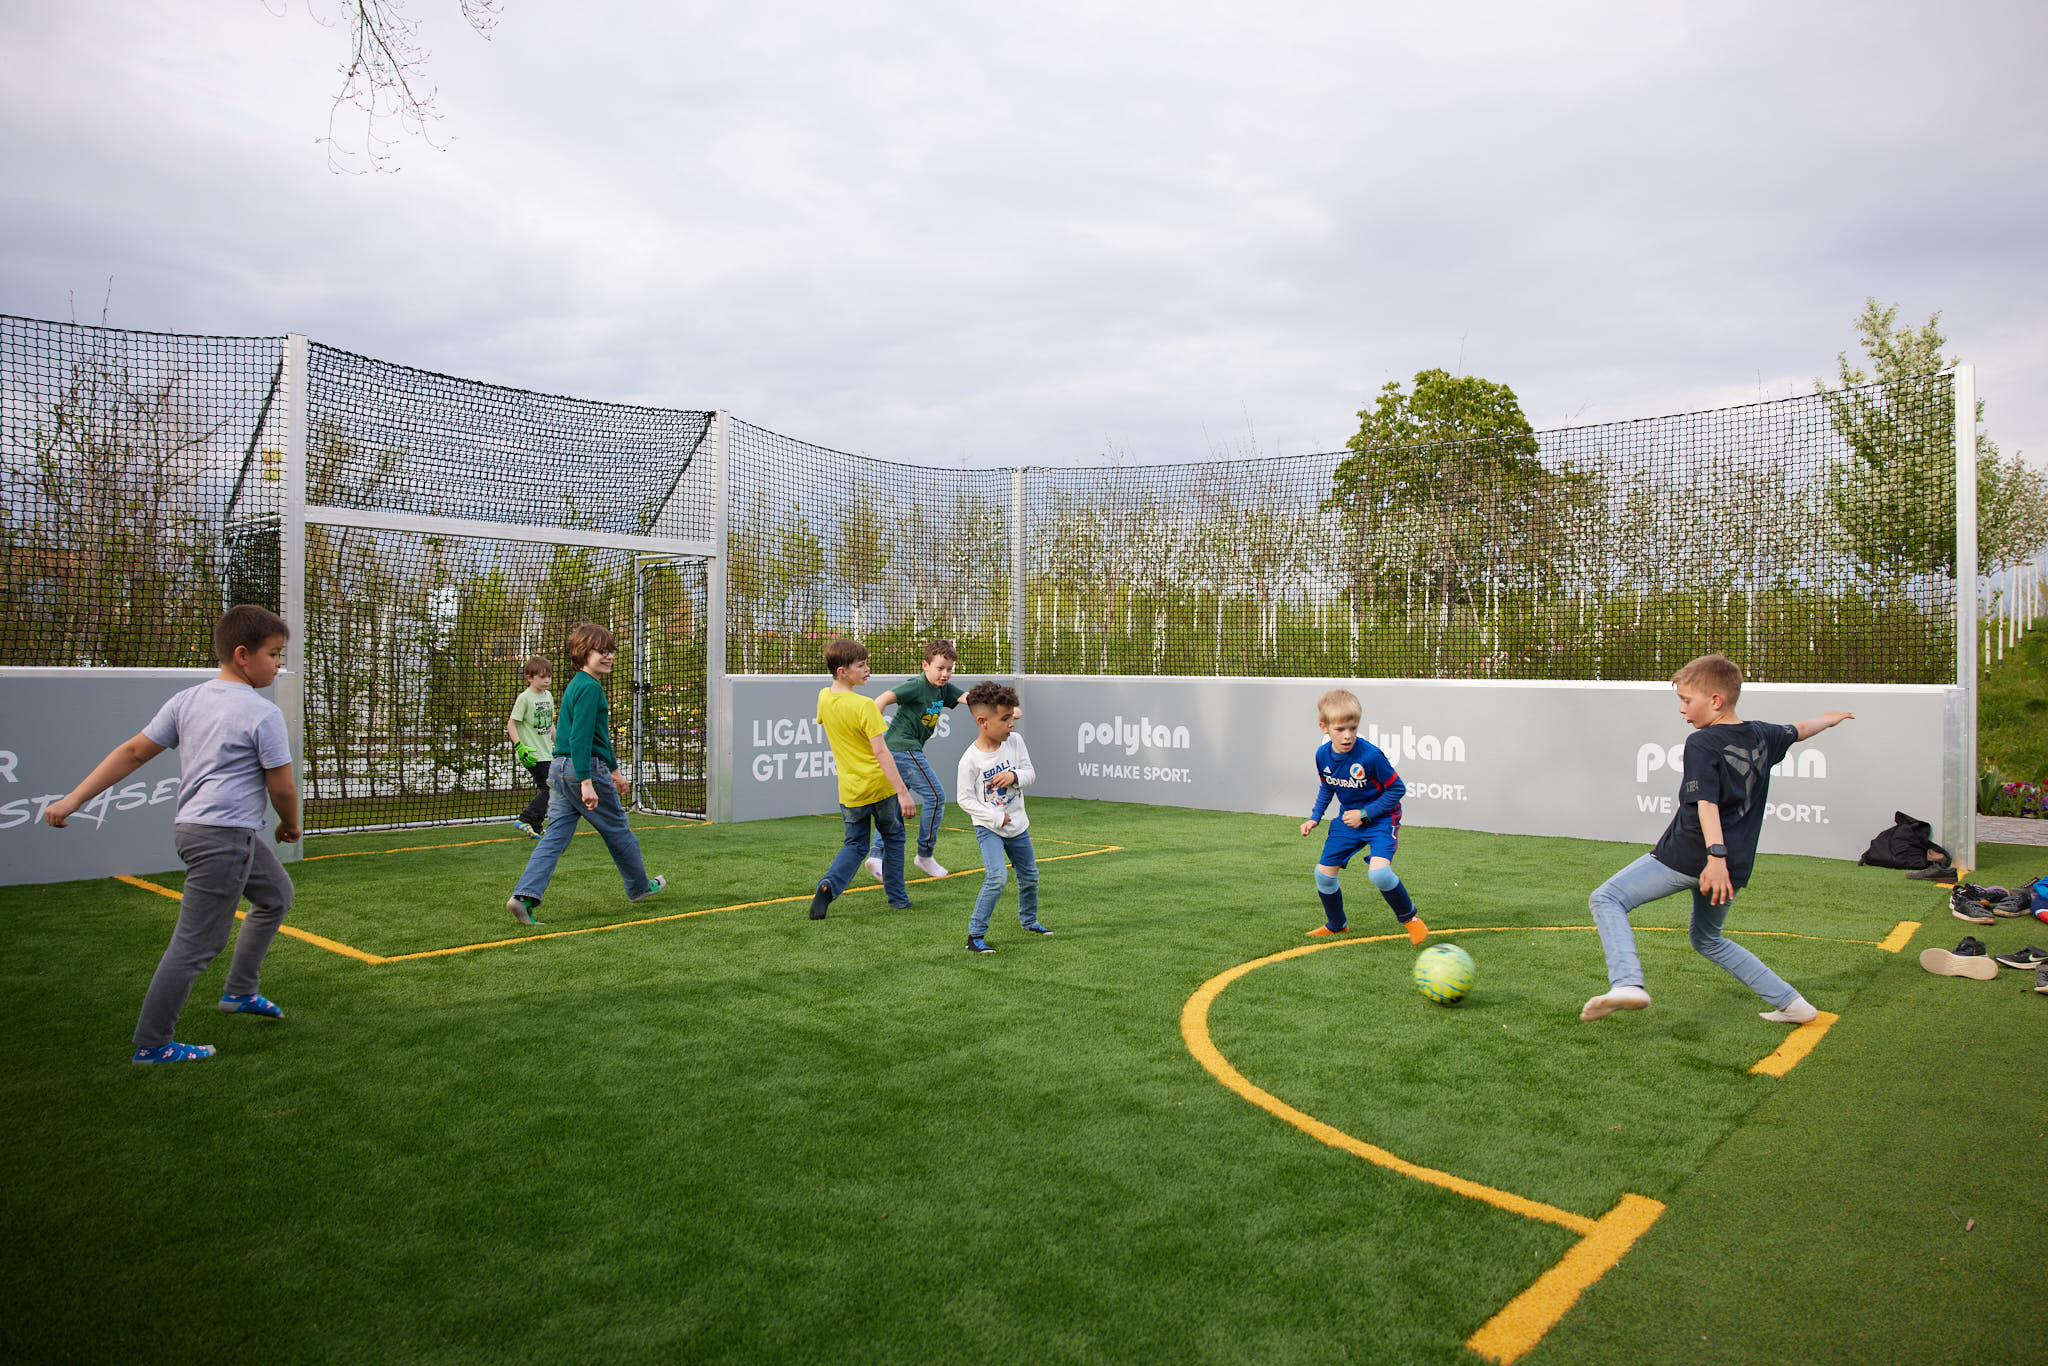 Kinder spielen Fußball in einem eingezäunten Spielfeld